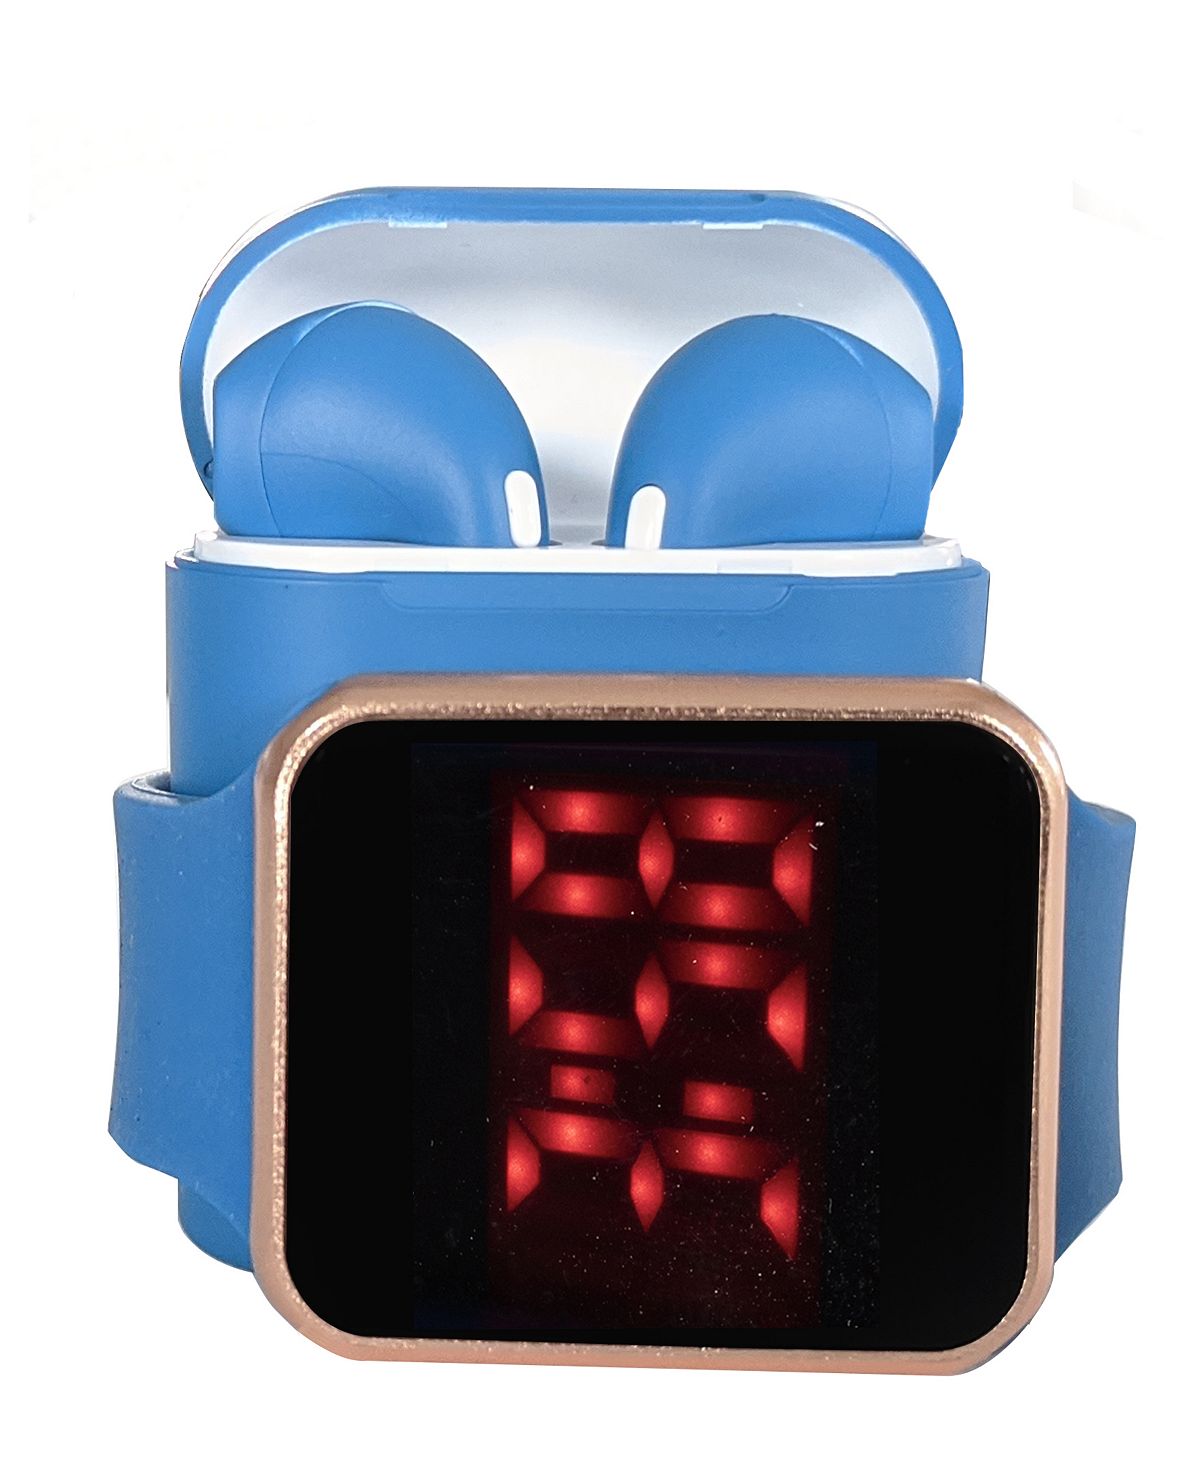 Унисекс светодиодные сенсорные часы и беспроводные наушники с портативным чехлом для зарядки Ztech, синий